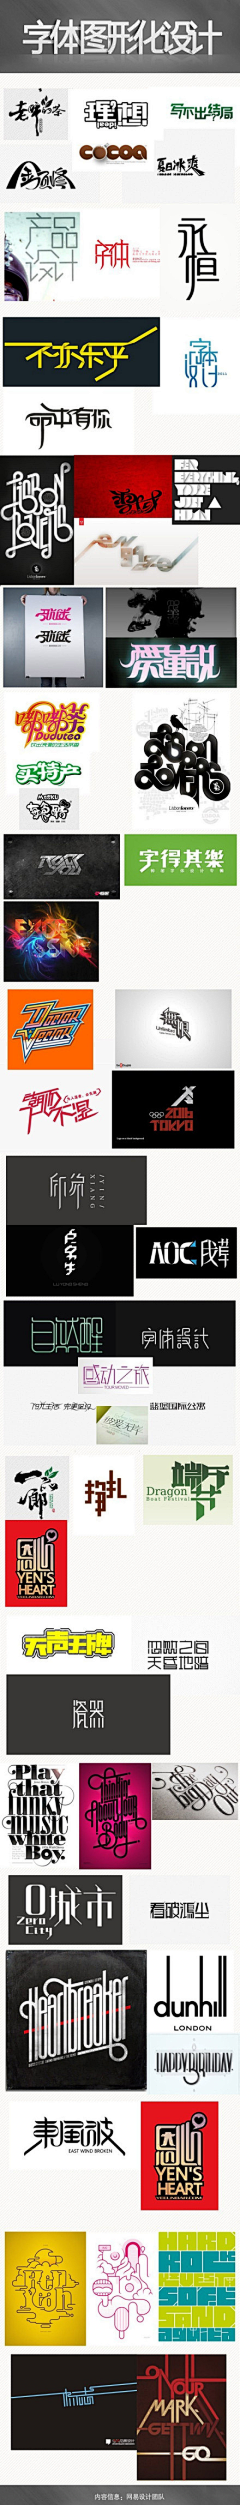 alieen_chen采集到4【排版设计】-字体设计、字体排版、构图排版